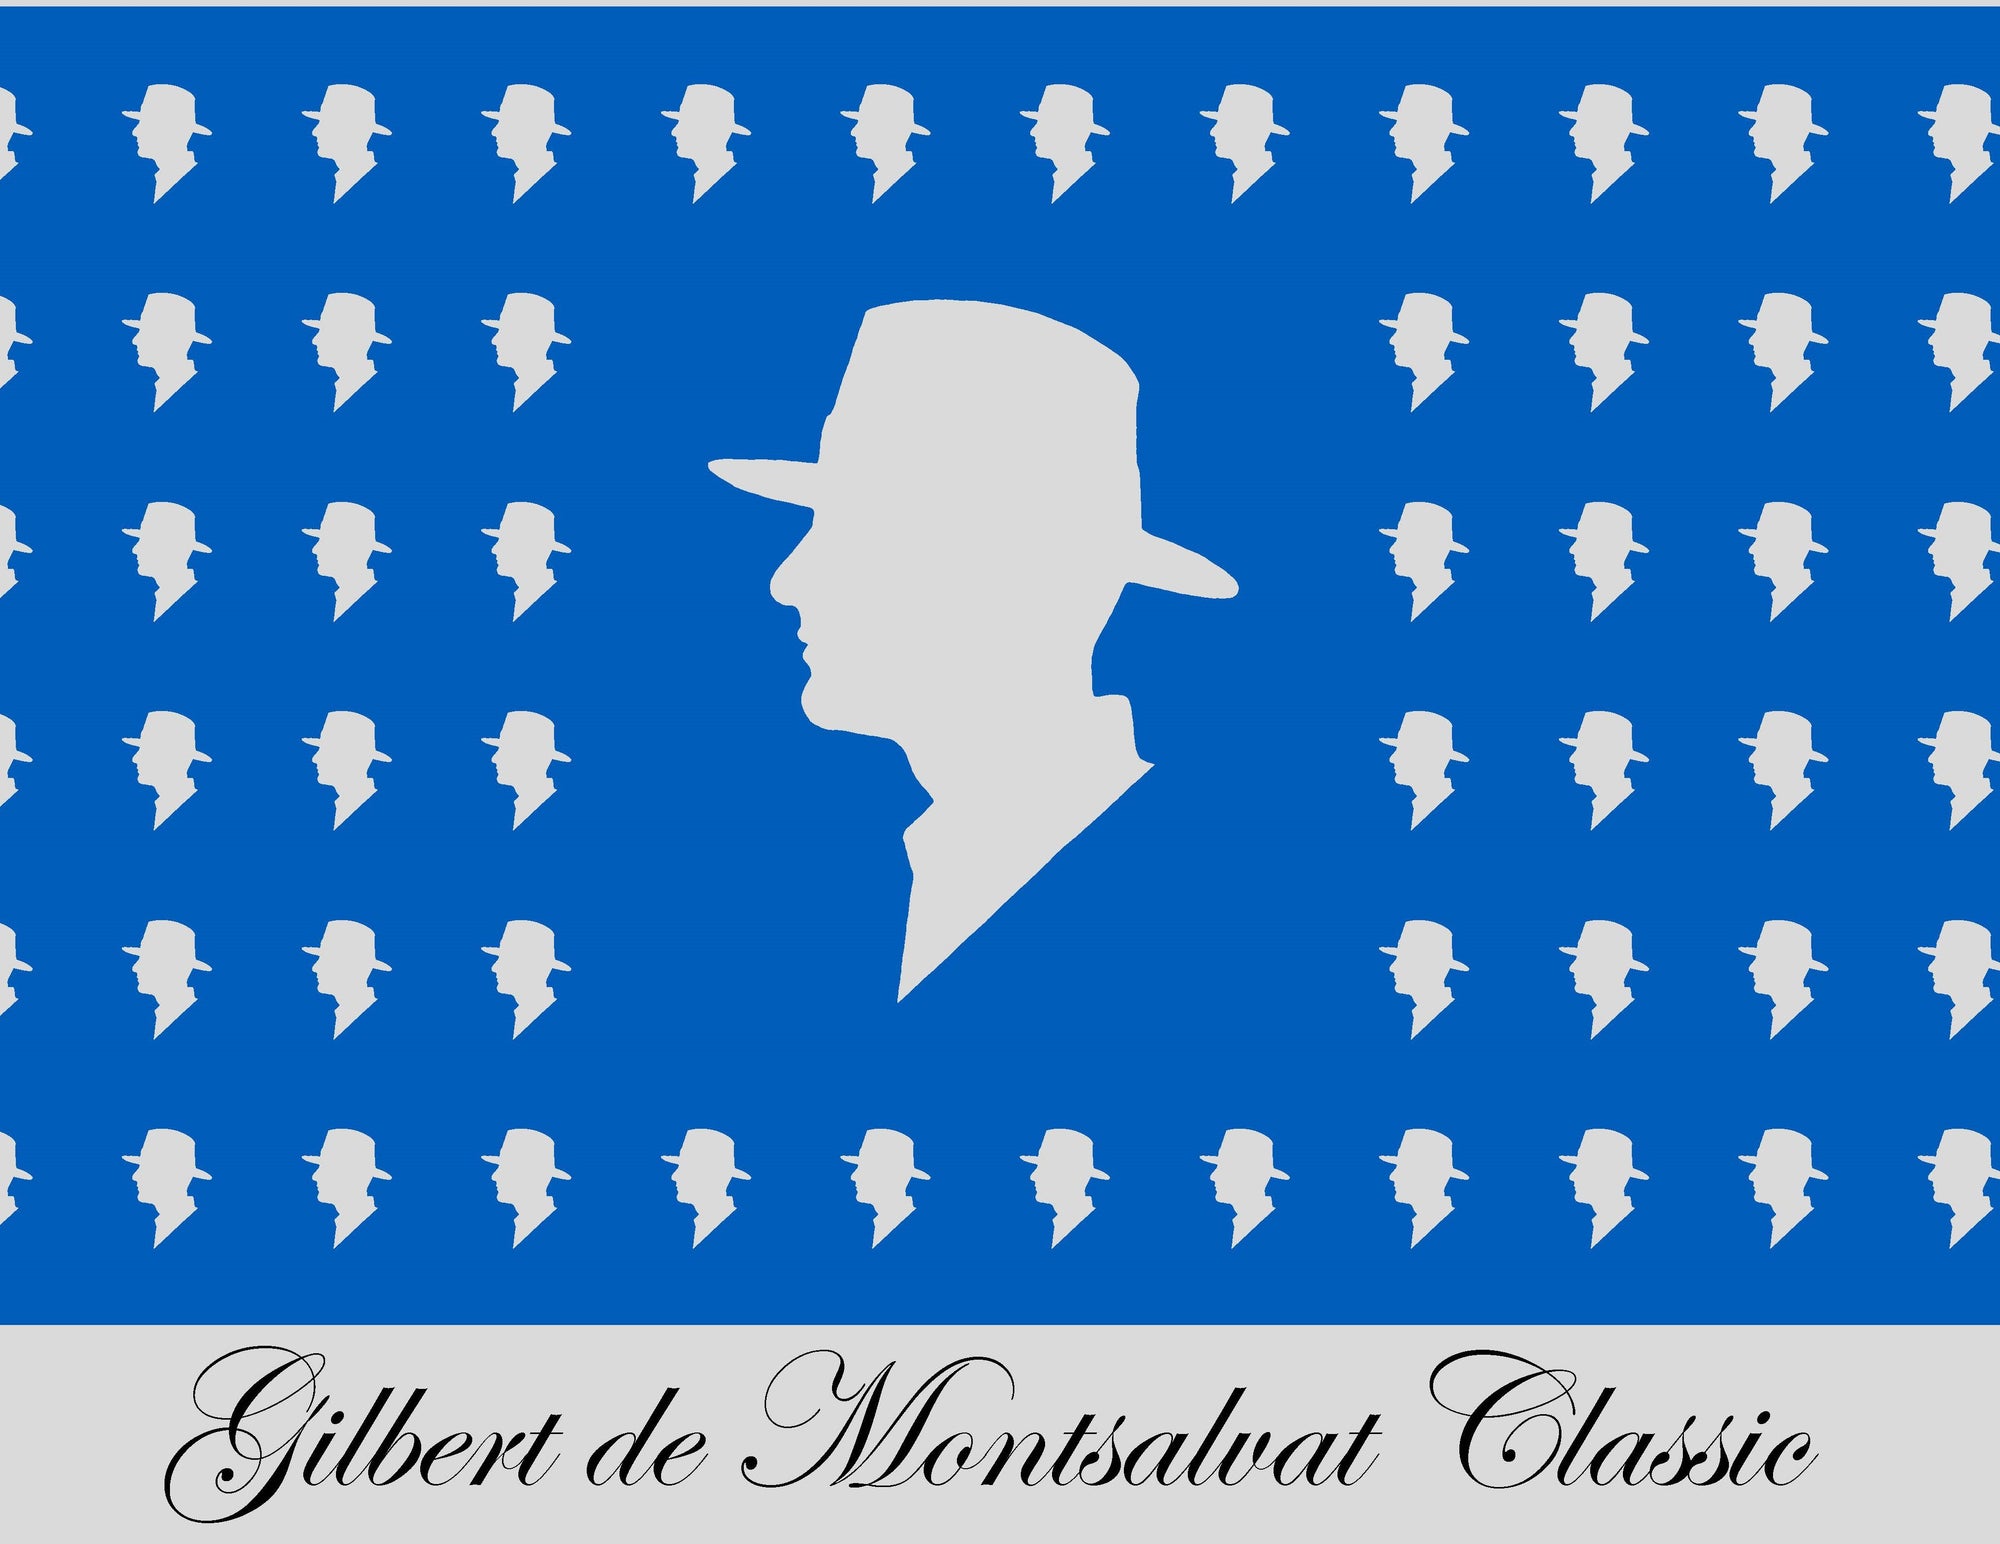 Gilbert de Montsalvat Classic